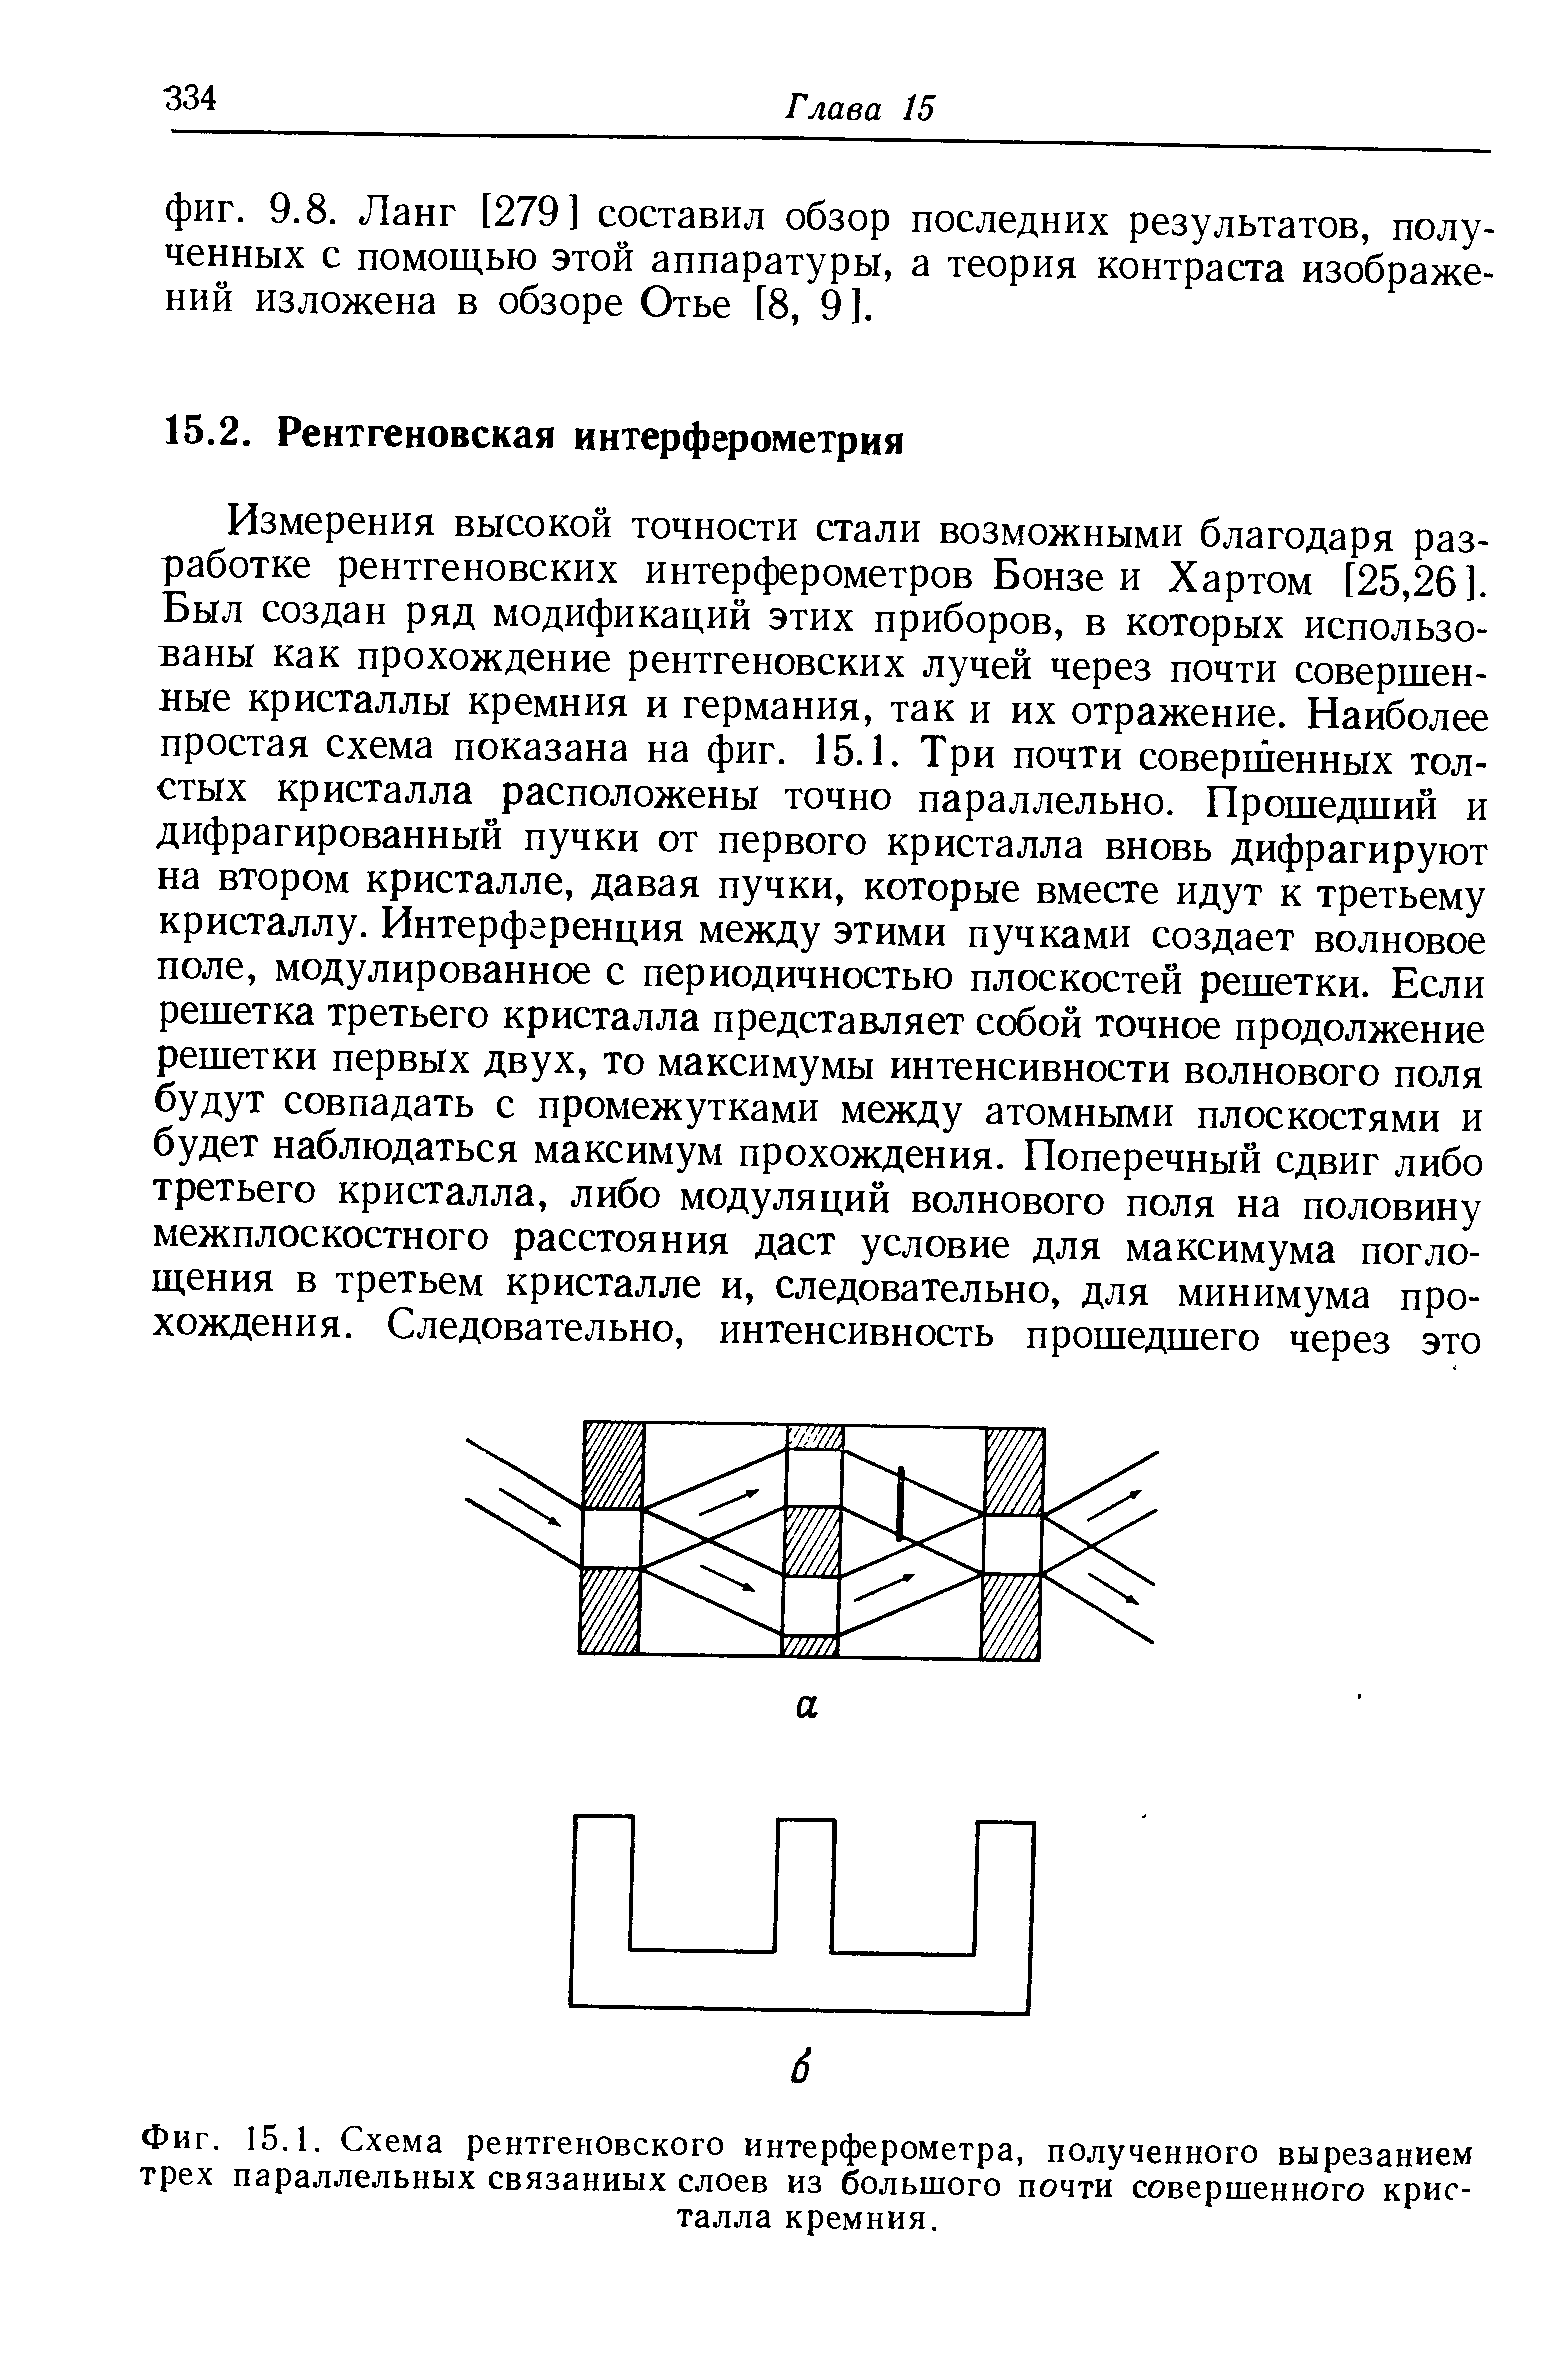 Фиг. 15.1. Схема рентгеновского интерферометра, полученного вырезанием трех параллельных связанных слоев из большого почти совершенного кристалла кремния.
